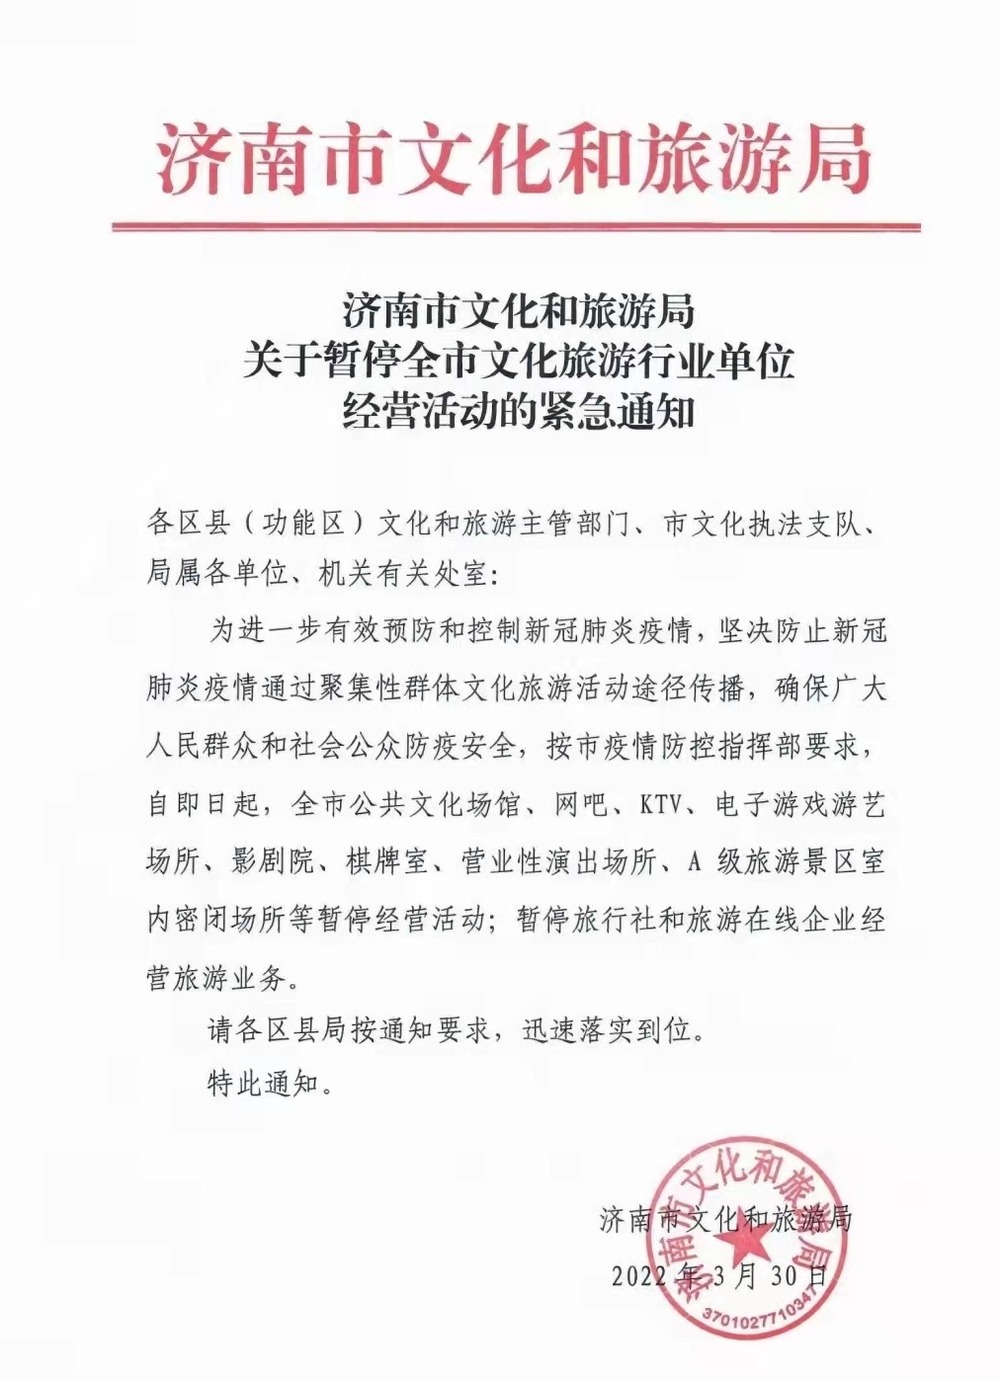 济南市公共文化场馆、网吧、影剧院等暂停经营活动